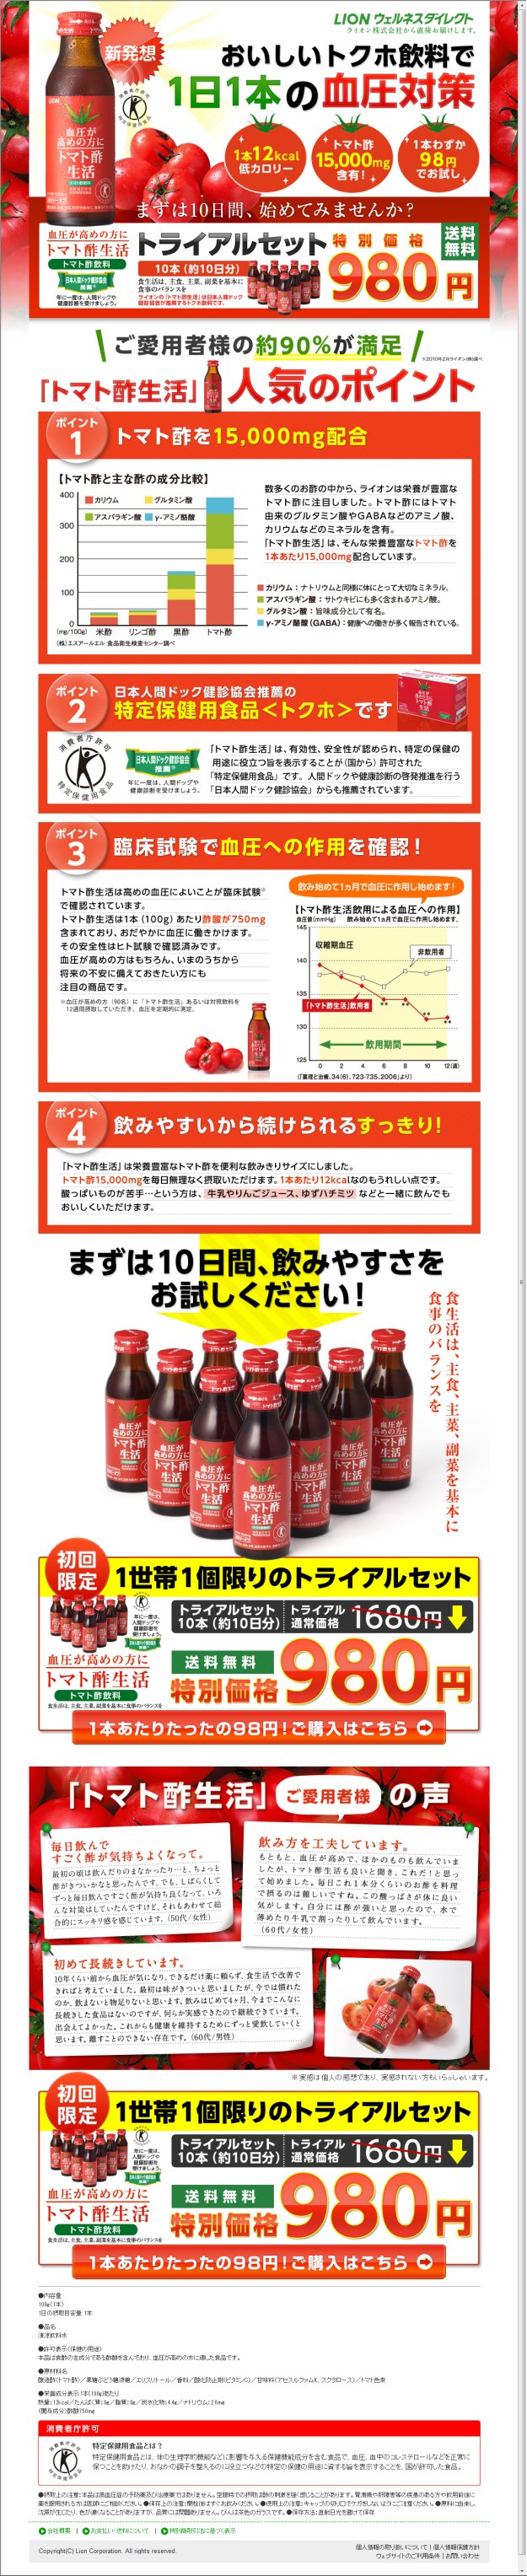 新発想おいしいトクホ飲料で1日1本の血圧対策 トマト酢生活